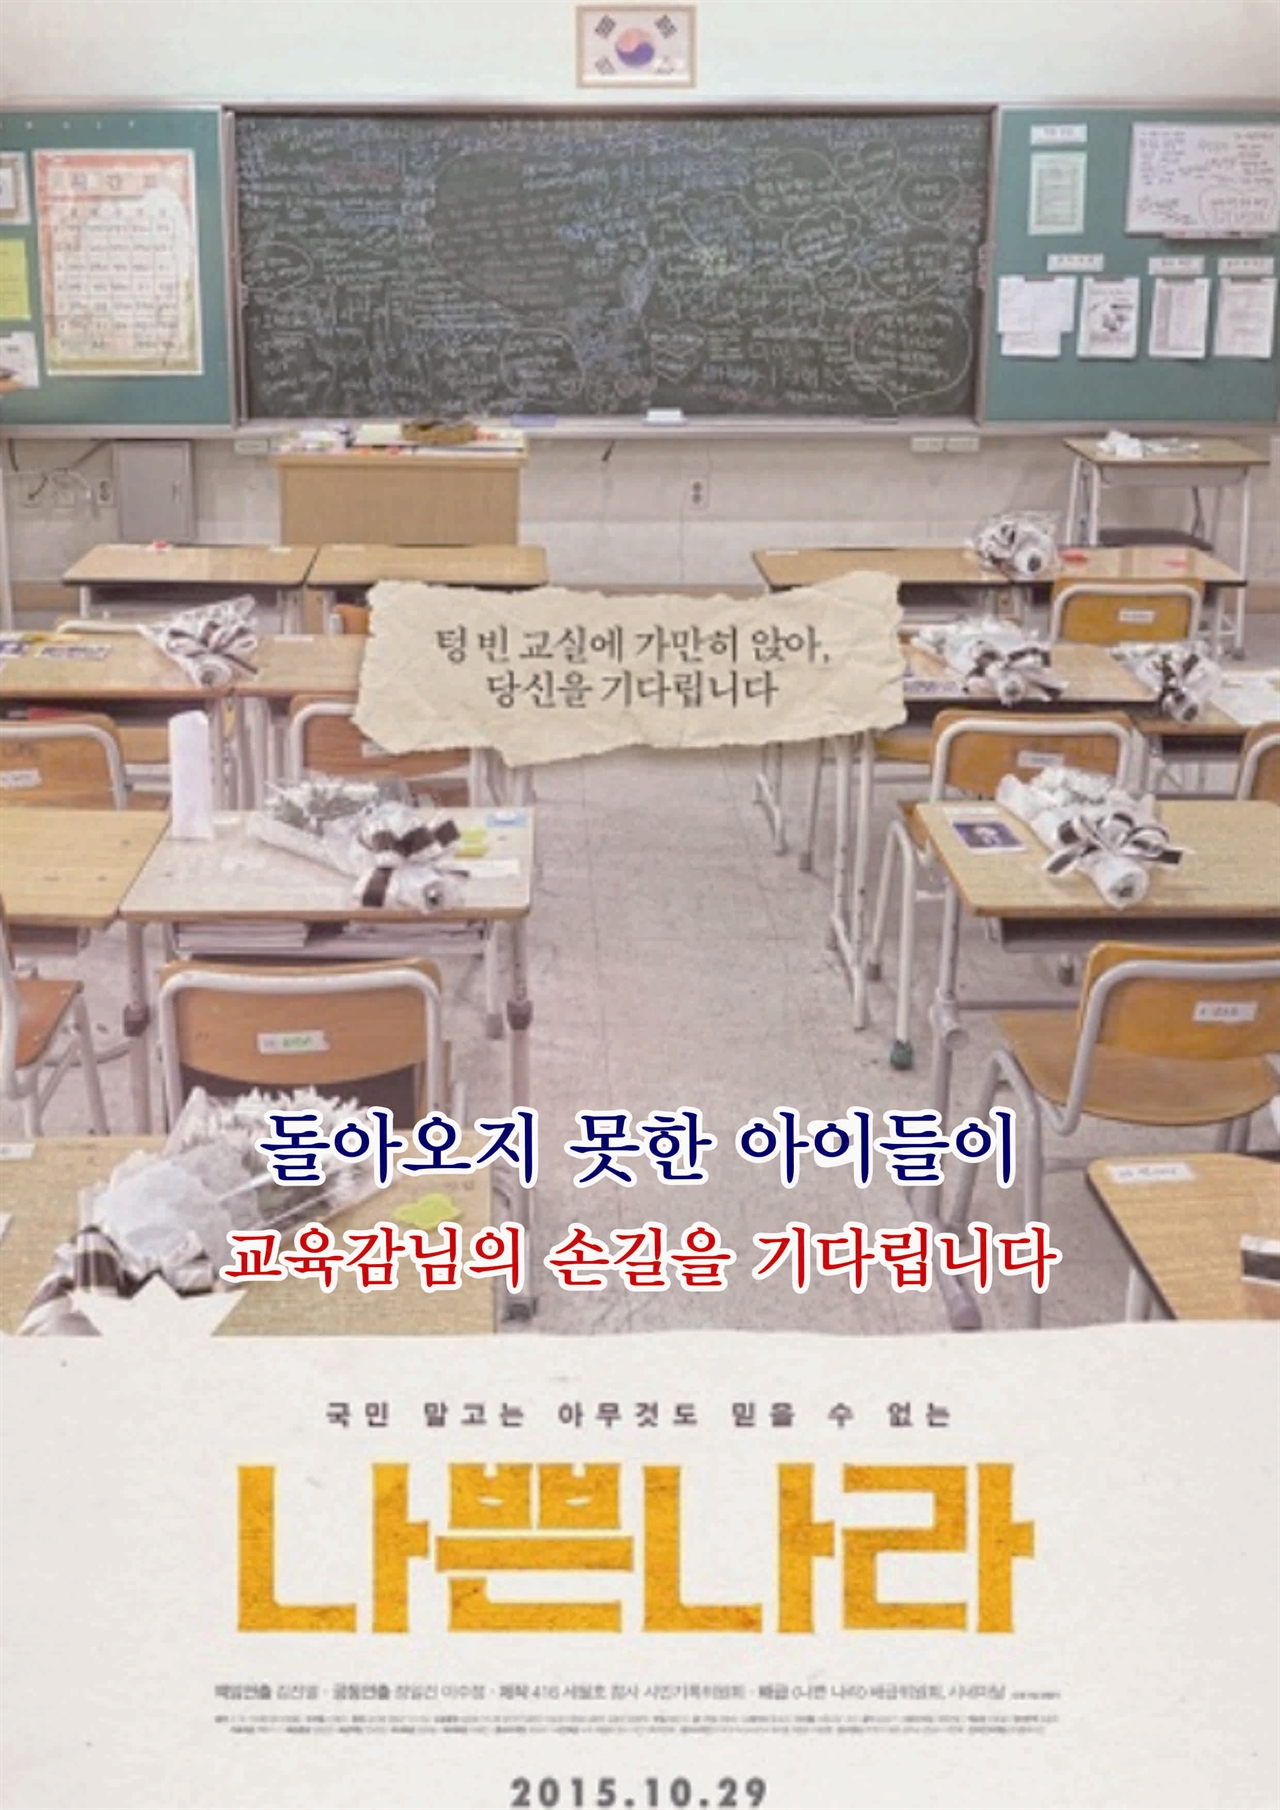 영화 나쁜 나라 포스터에 교육감의 참여를 호소하는 글귀를 넣음